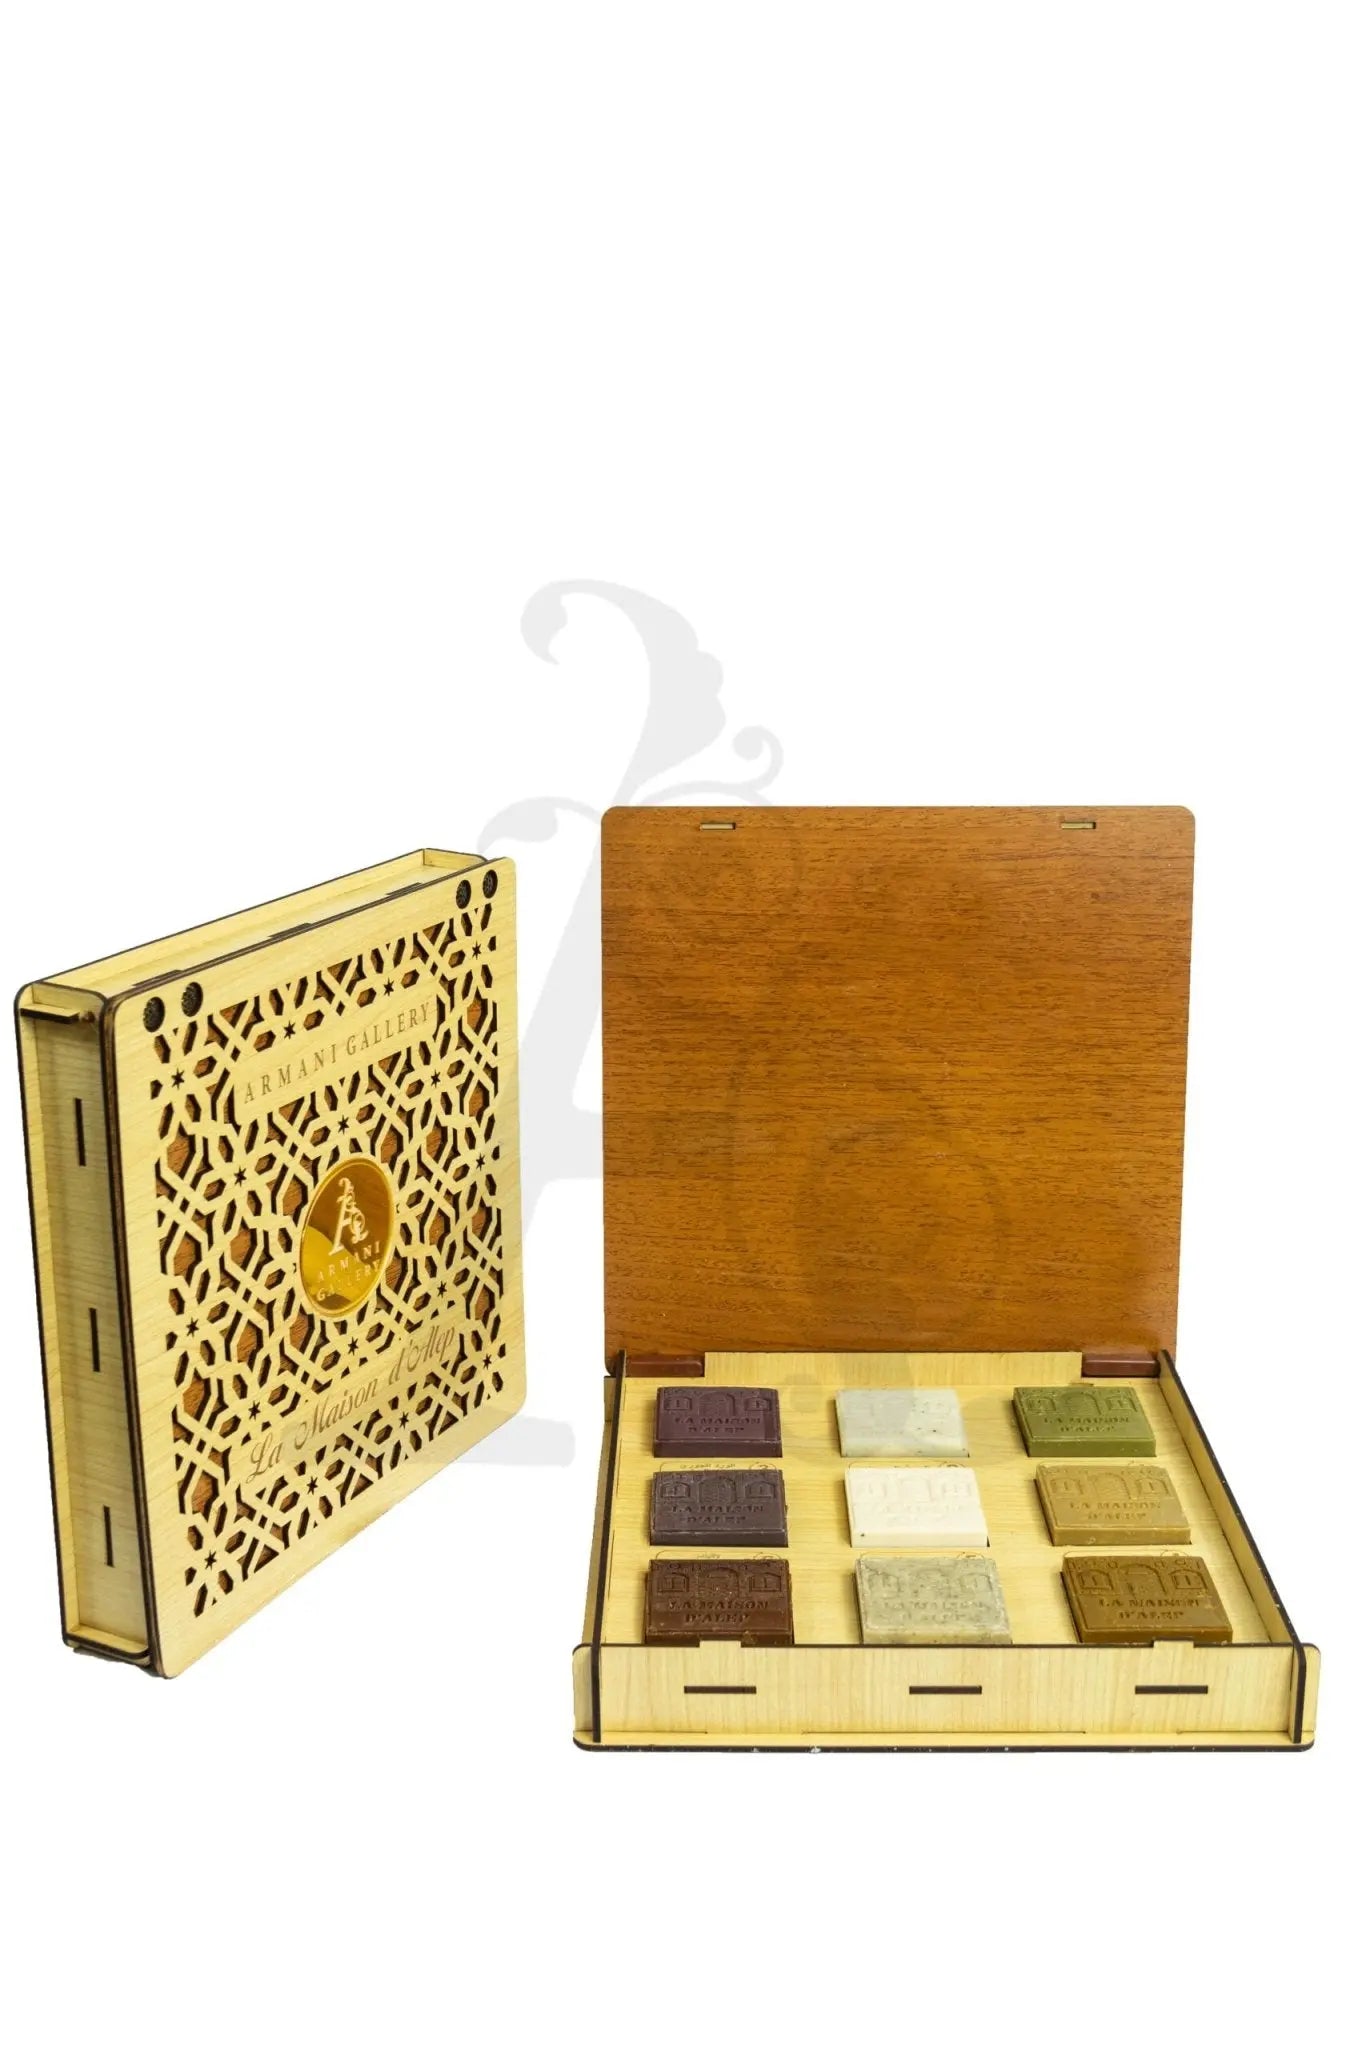 La Maison Natural Soap Set in Wooden Engraved Box - 9 Pieces (710gm) - La Maison d'Alep